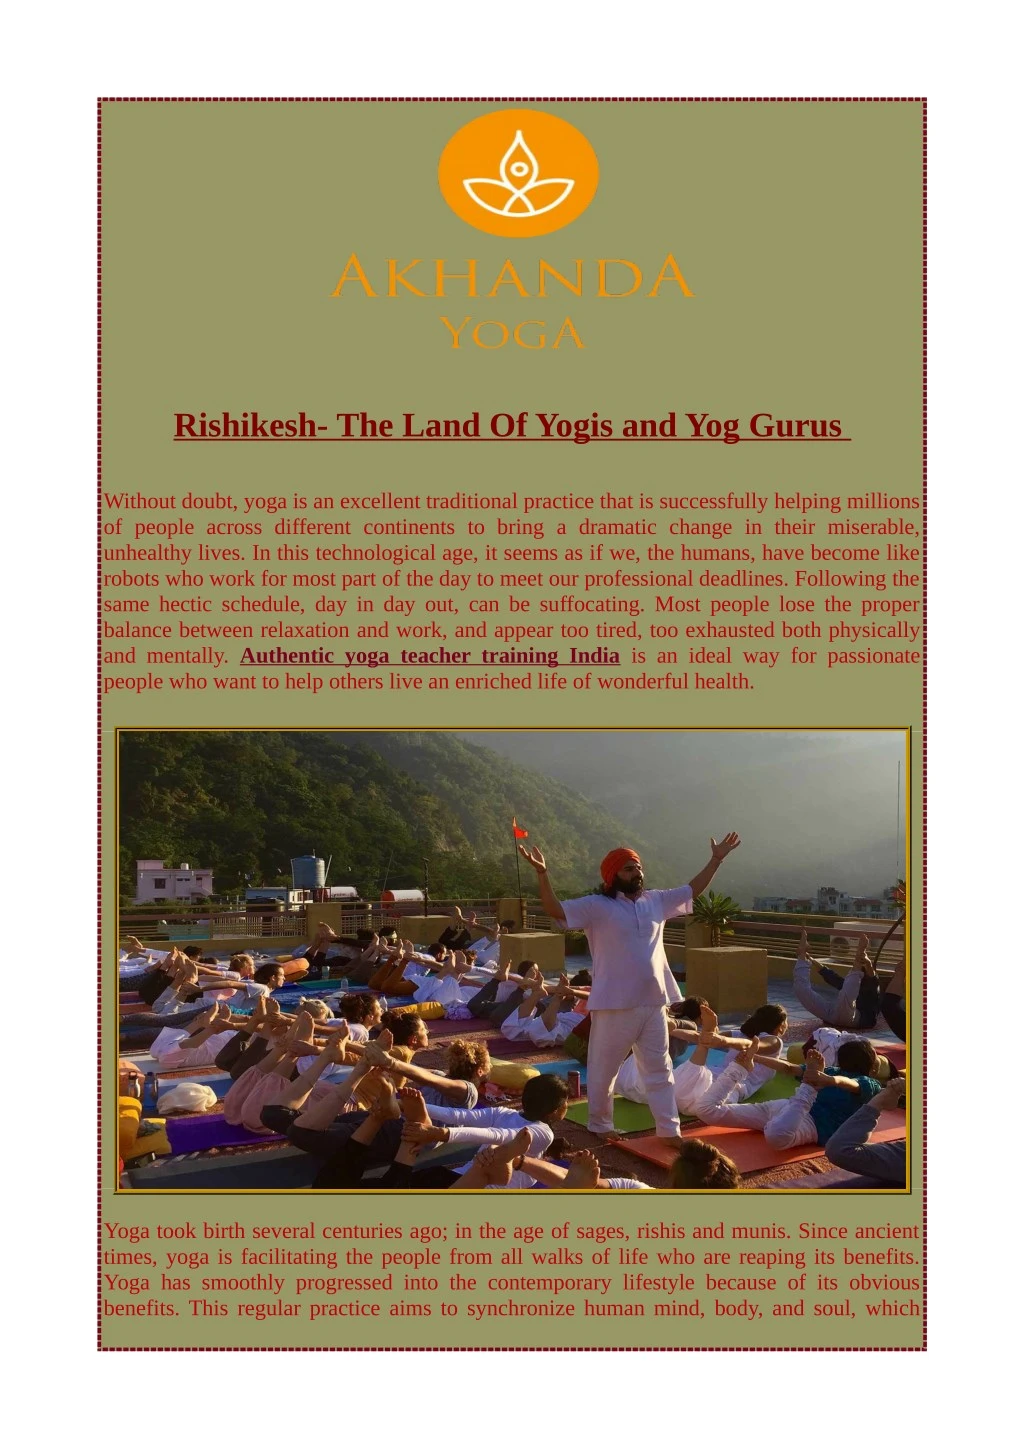 rishikesh the land of yogis and yog gurus